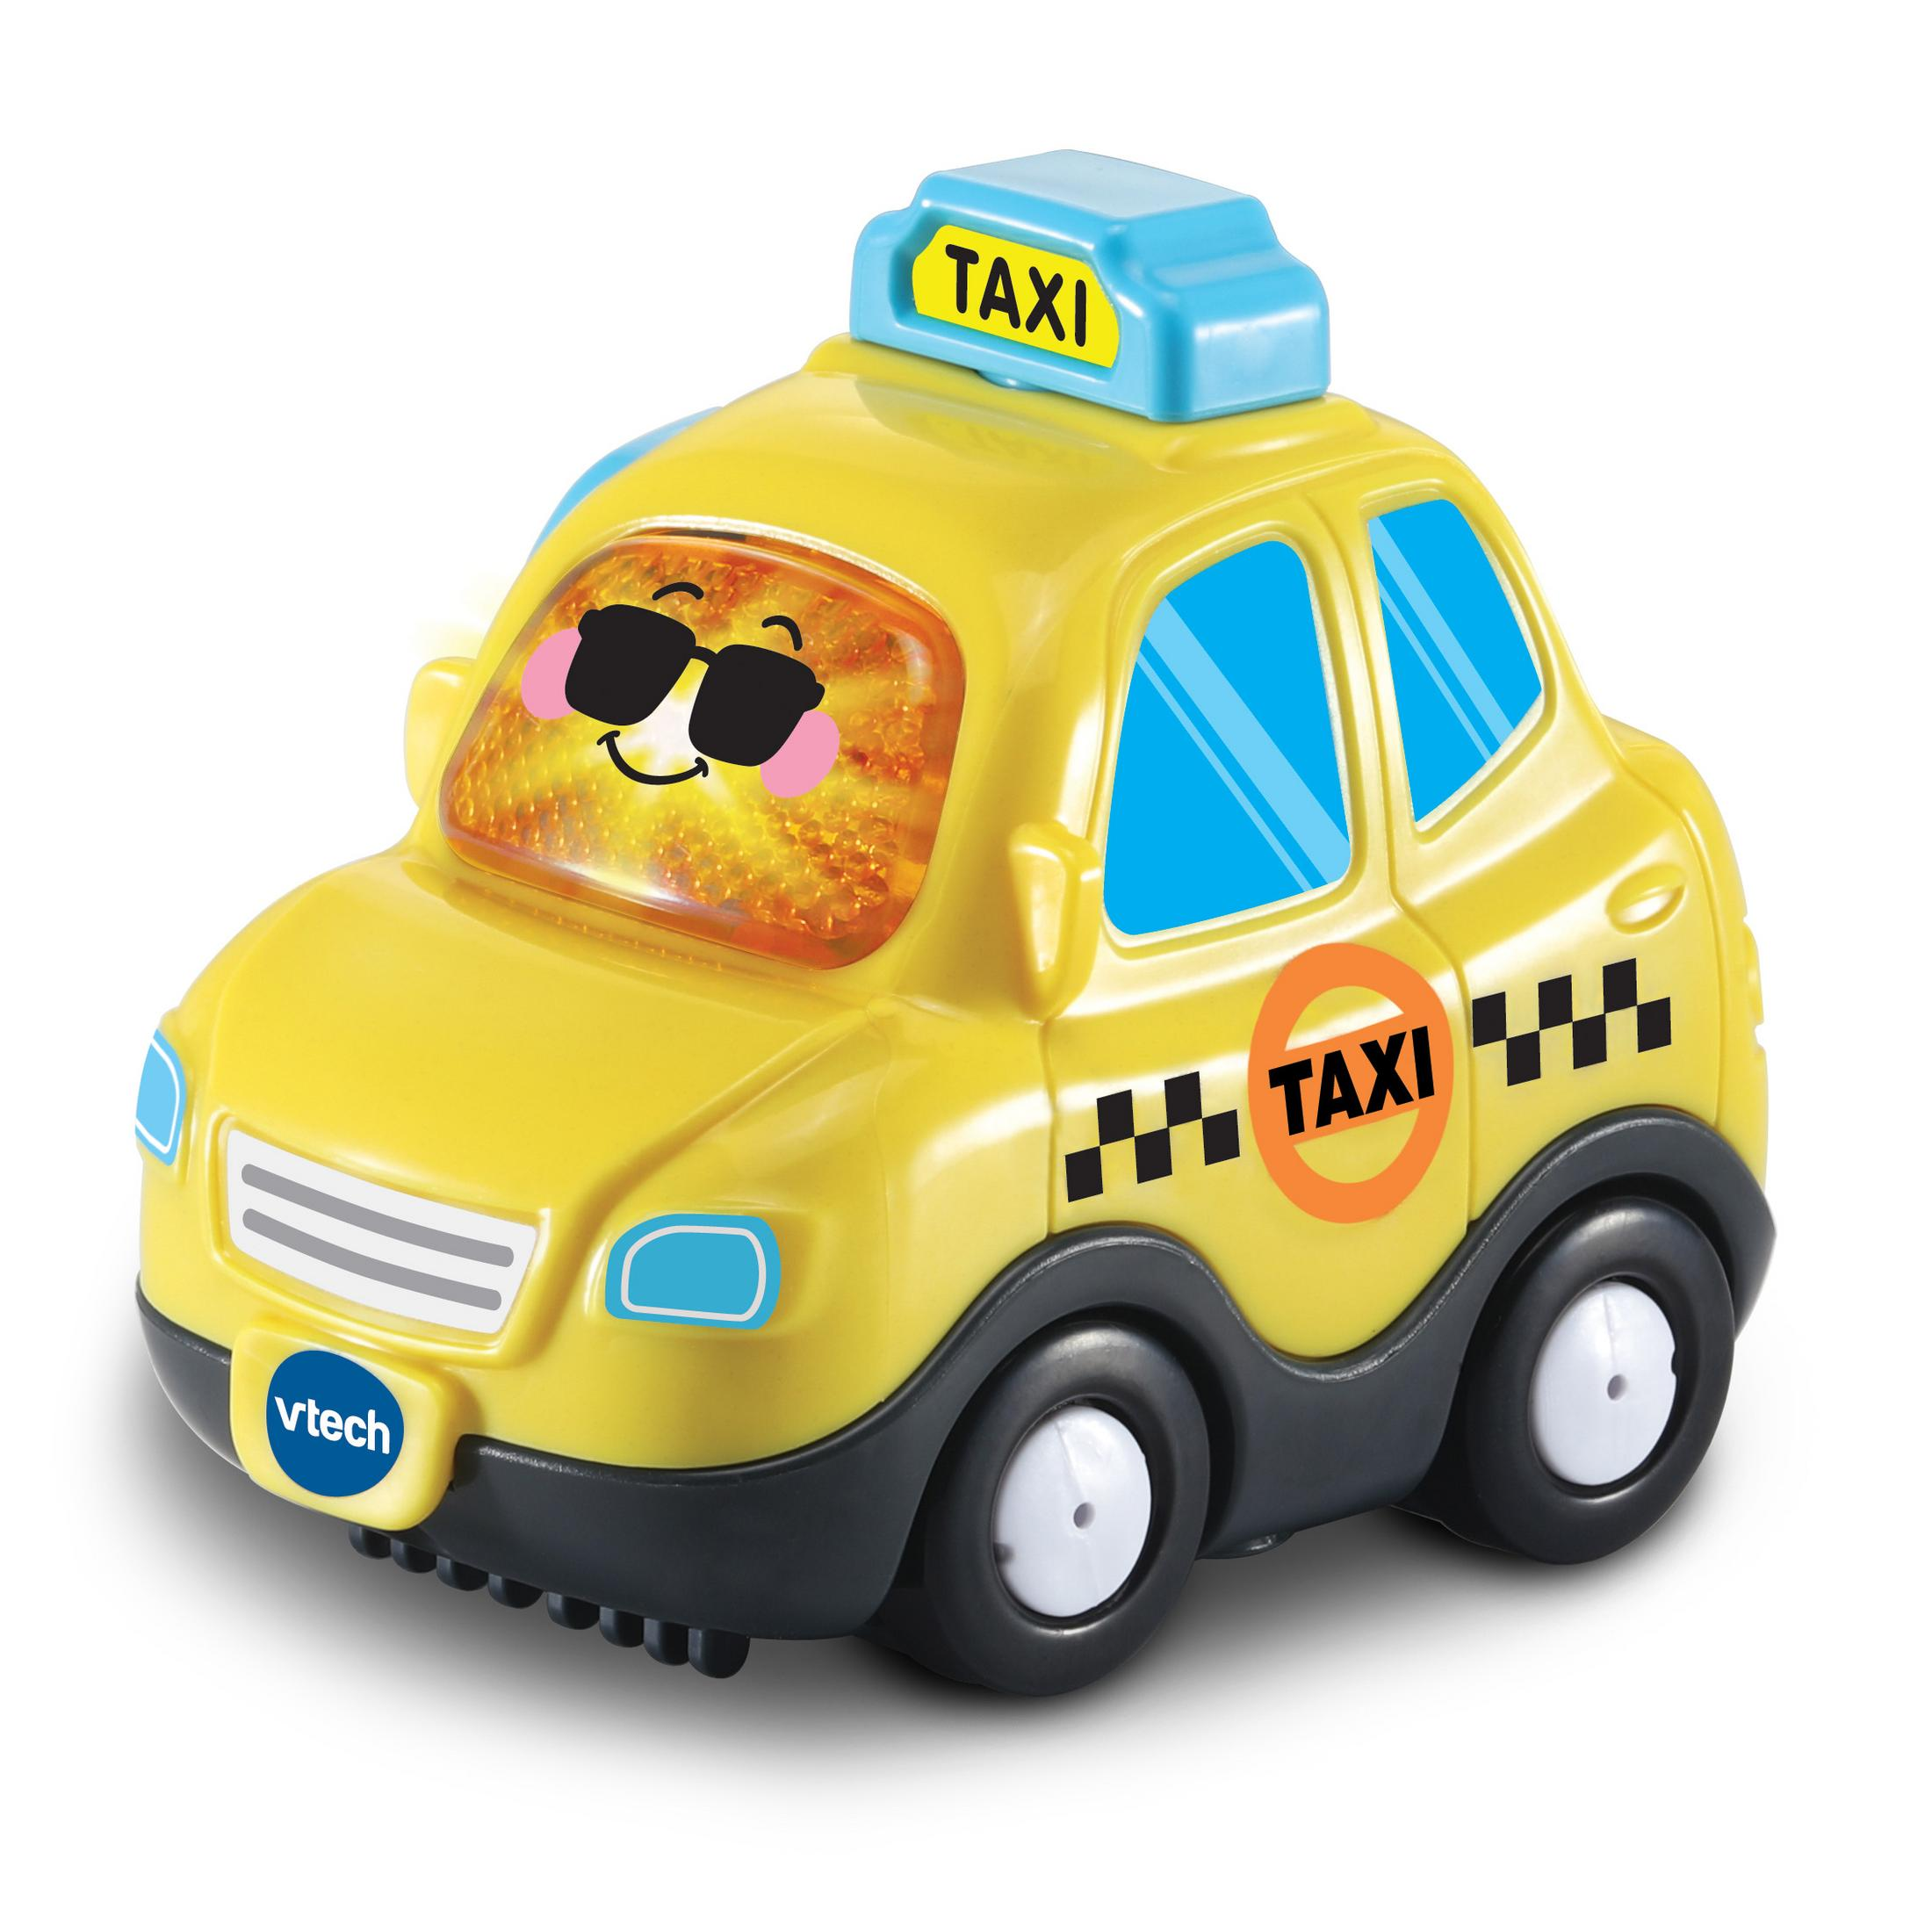 VTECH 80-561104 TUT TUT - BF Gelb Spielzeugauto, TAXI